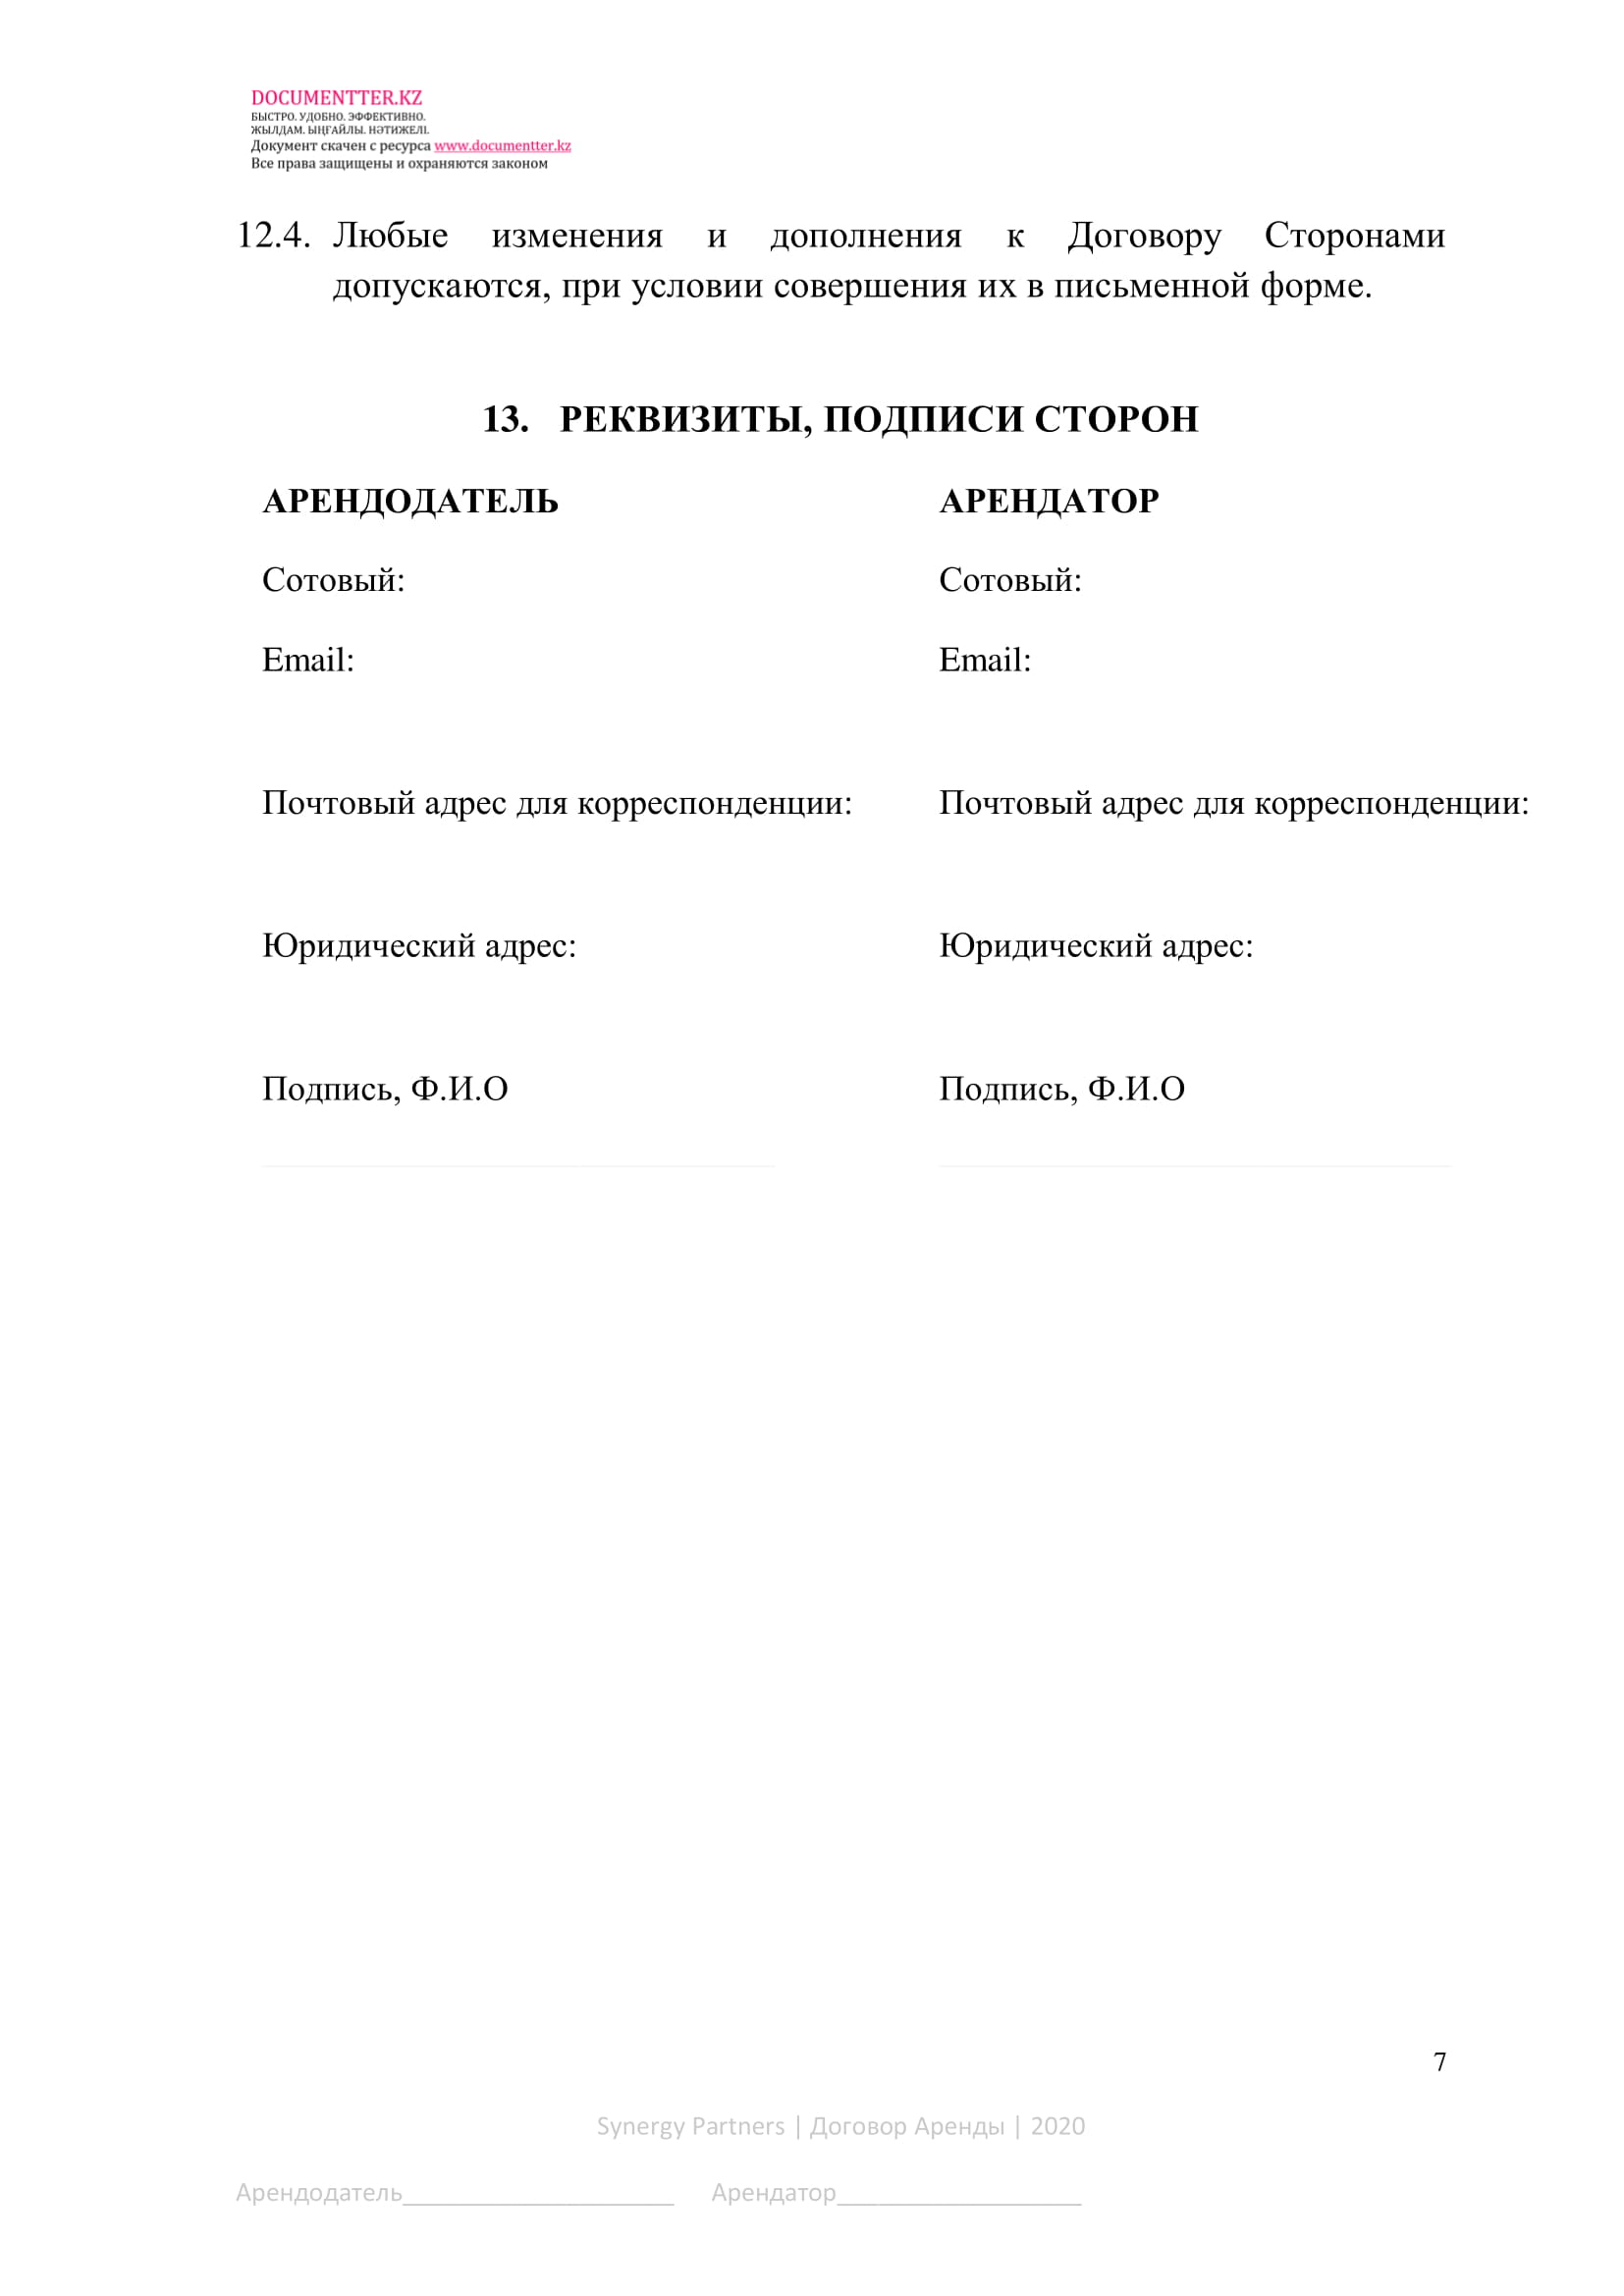 Договор аренды земельного участка | documentterkz.com в Казахстане